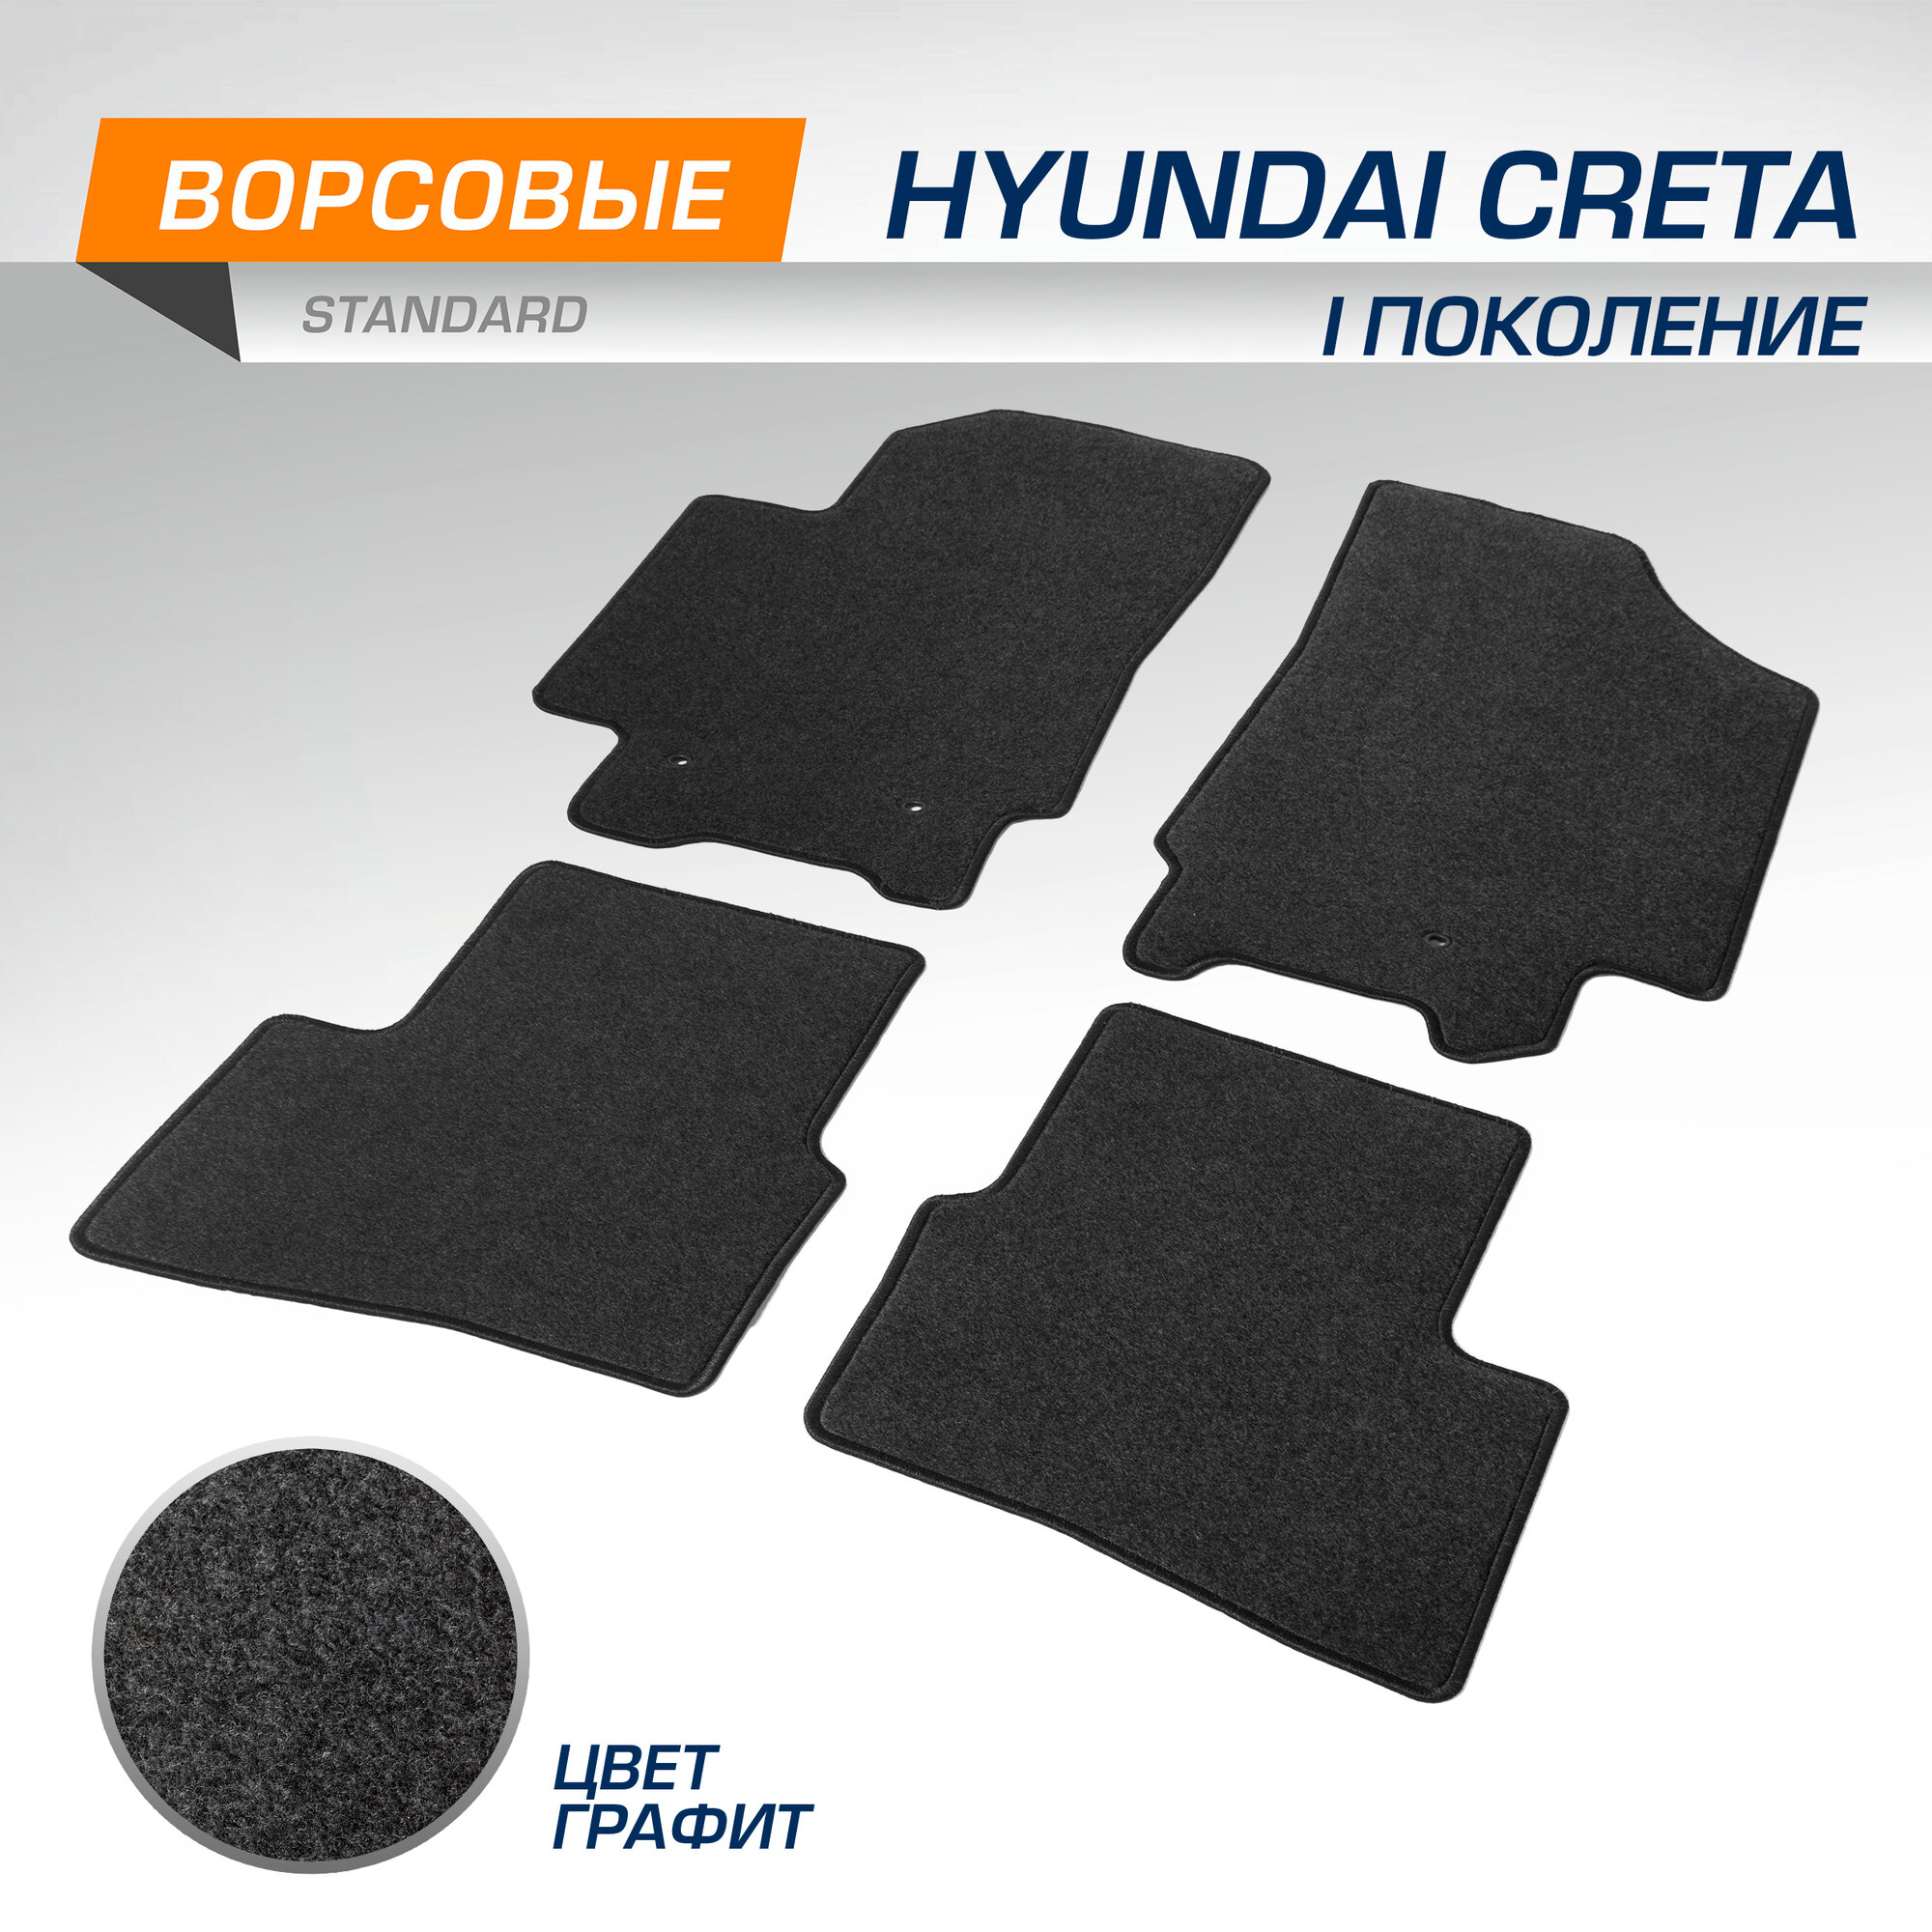 Коврики текстильные в салон автомобиля AutoFlex Standard для Hyundai Creta (Хендай Крета) I поколение 2016-2021, графит, 4 части, с крепежом, 4230201